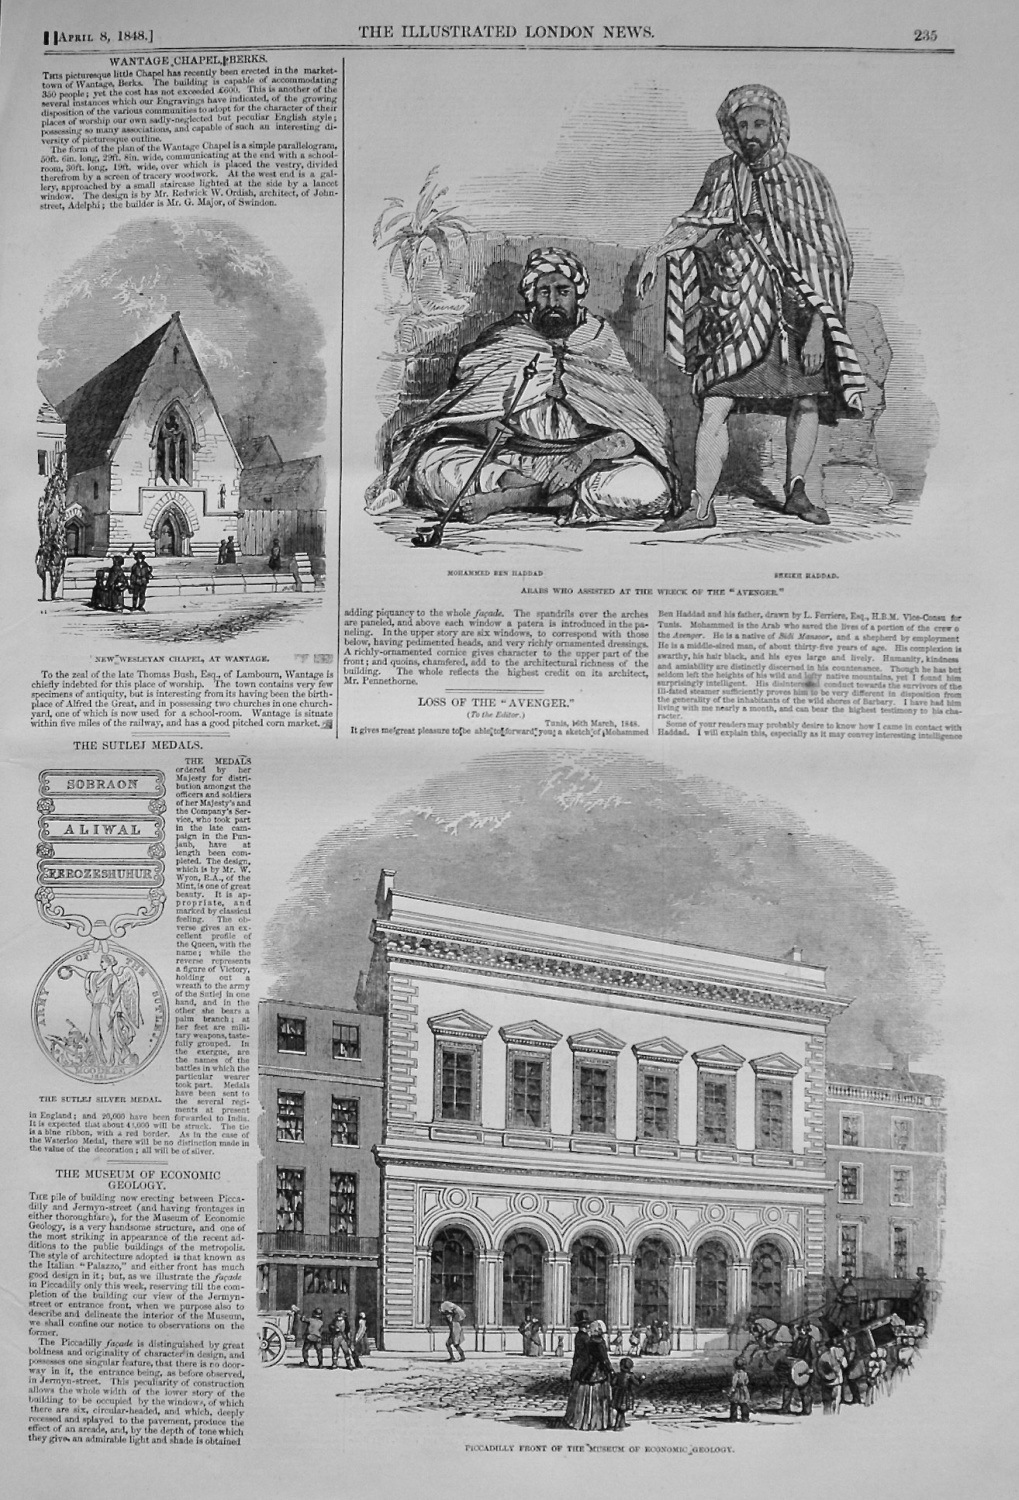 Museum of Economic Geology. 1848